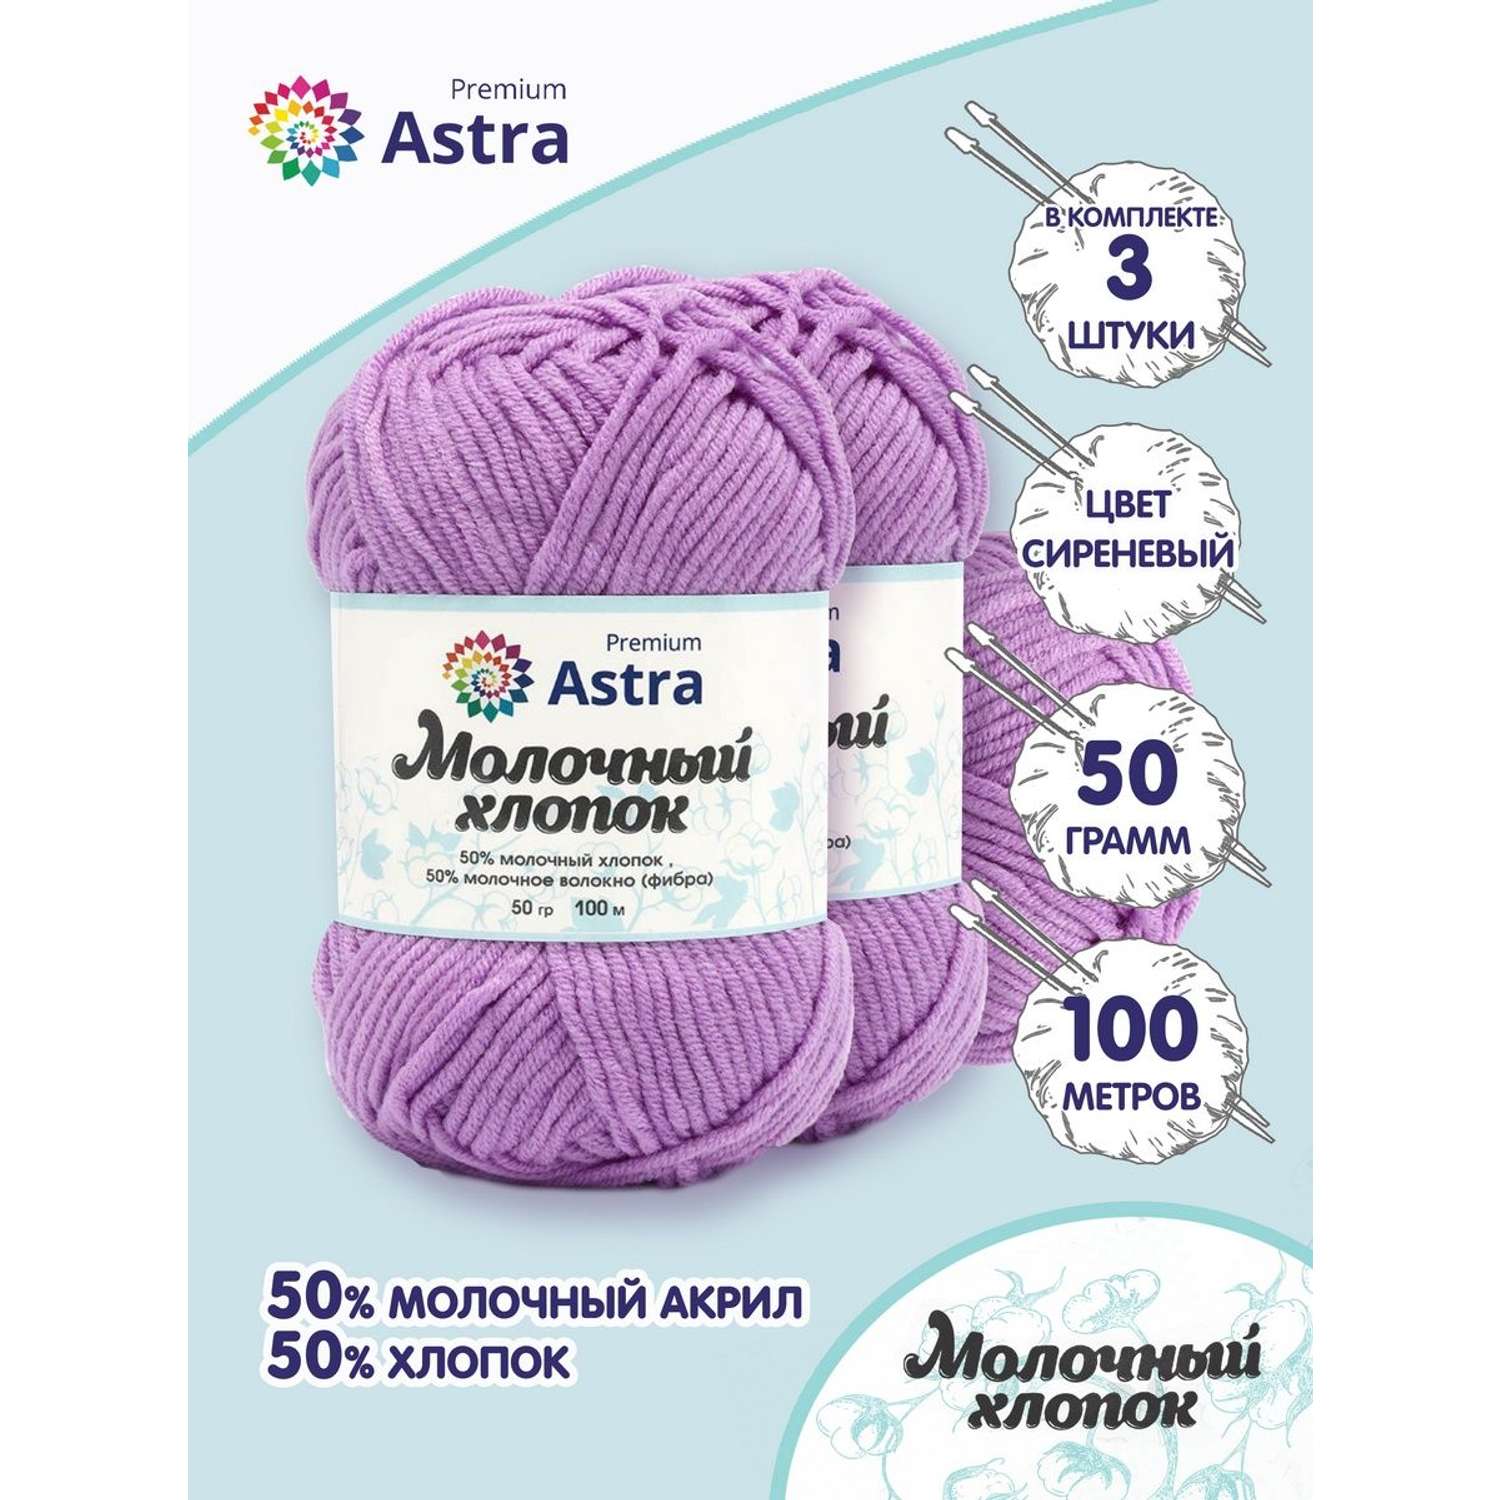 Пряжа для вязания Astra Premium milk cotton хлопок акрил 50 гр 100 м 65 сиреневый 3 мотка - фото 1